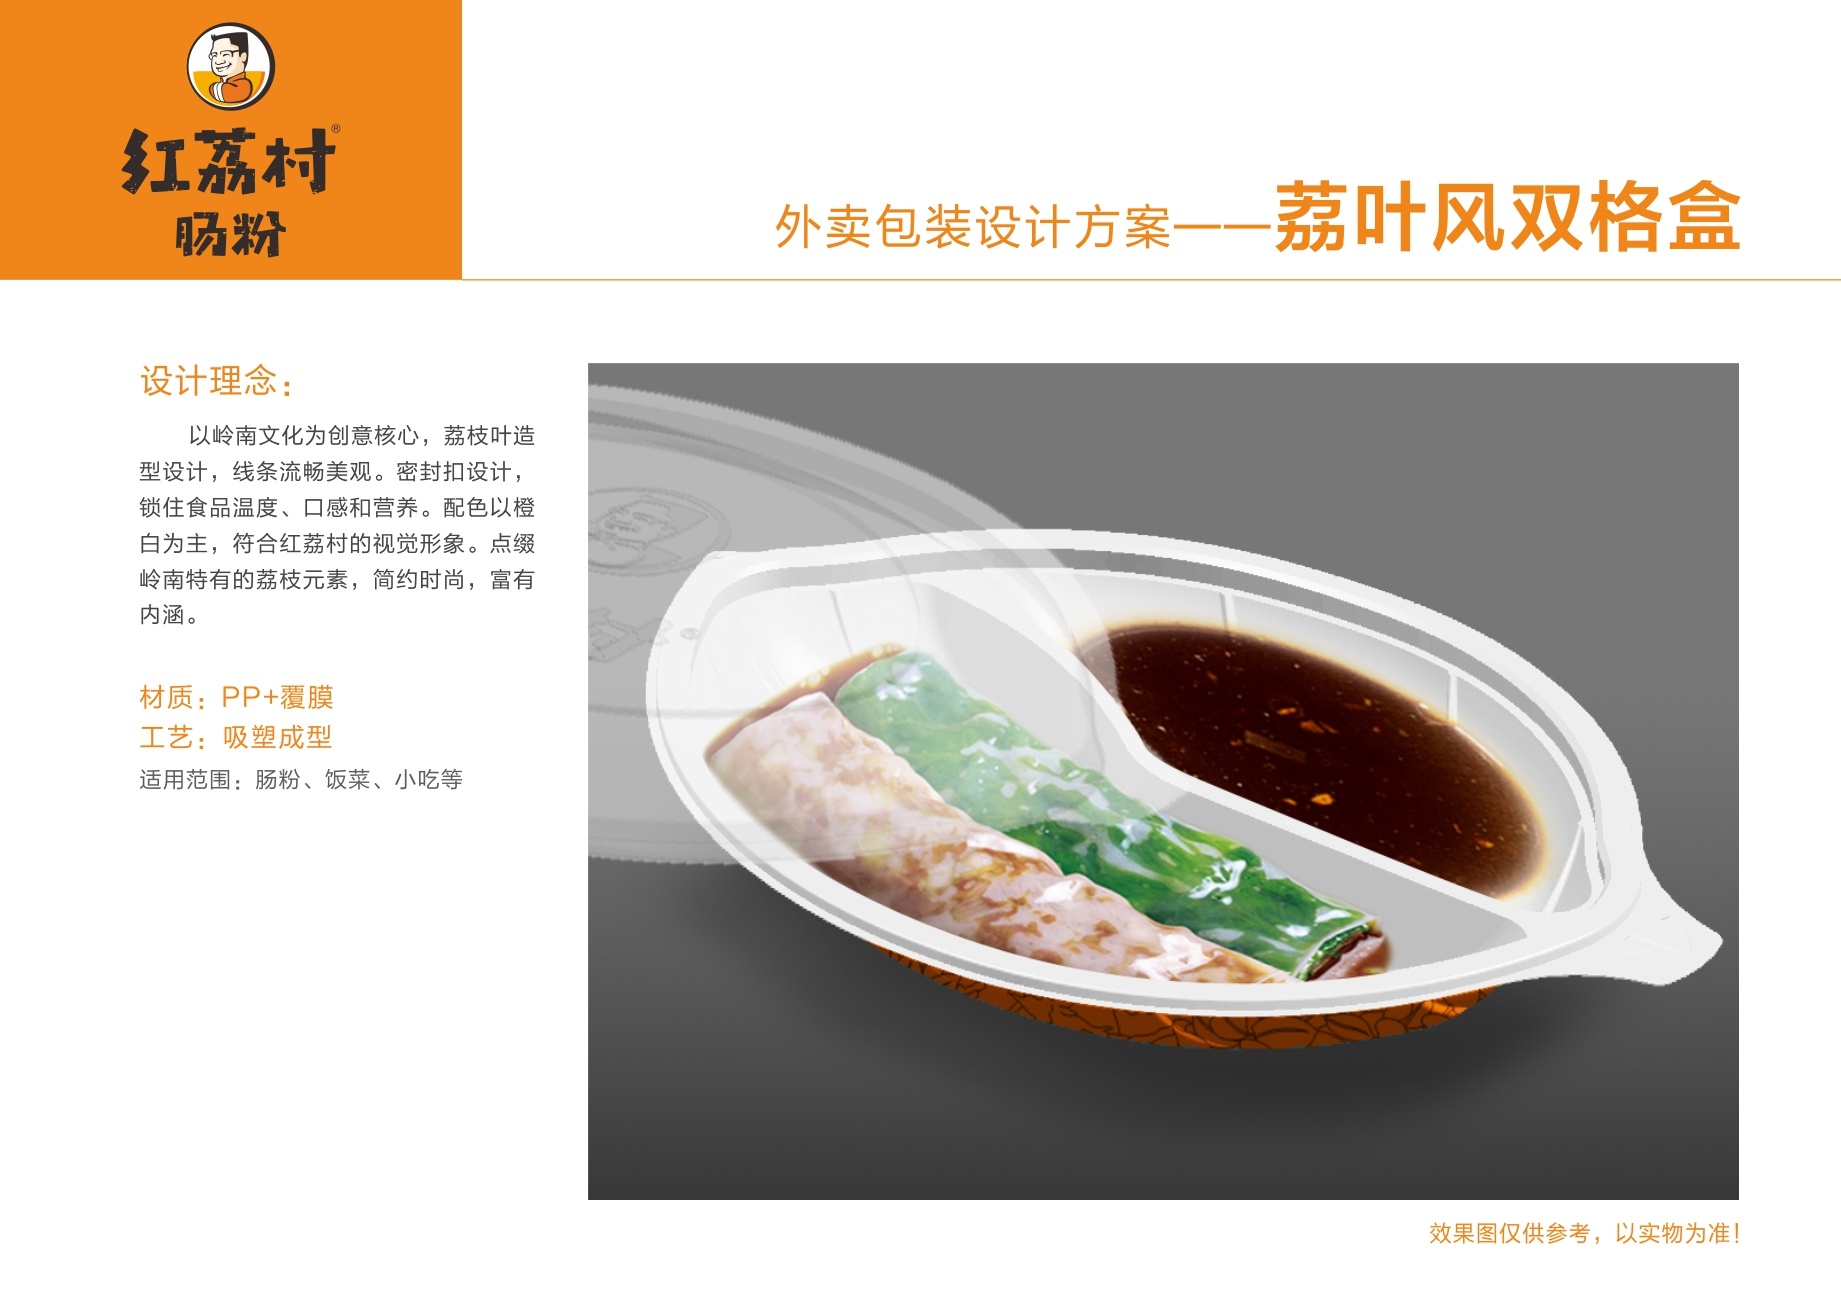 红荔村肠粉 餐饮系列产品包装-食品包装设计作品|公司-特创易·GO